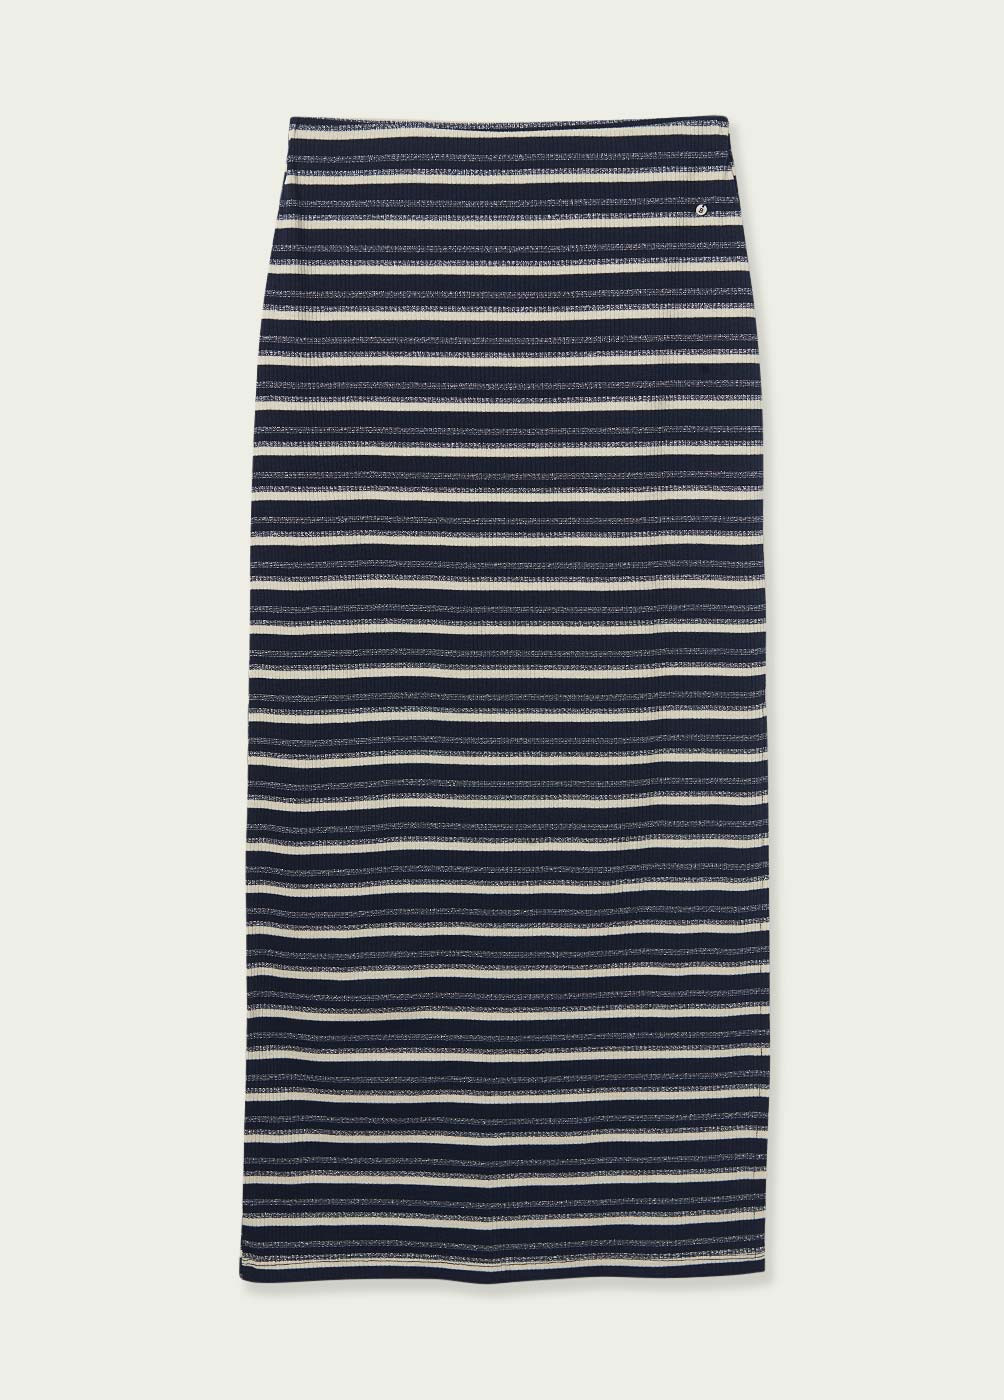 ALT: Las mejores faldas largas que puedes comprar hoy mismo